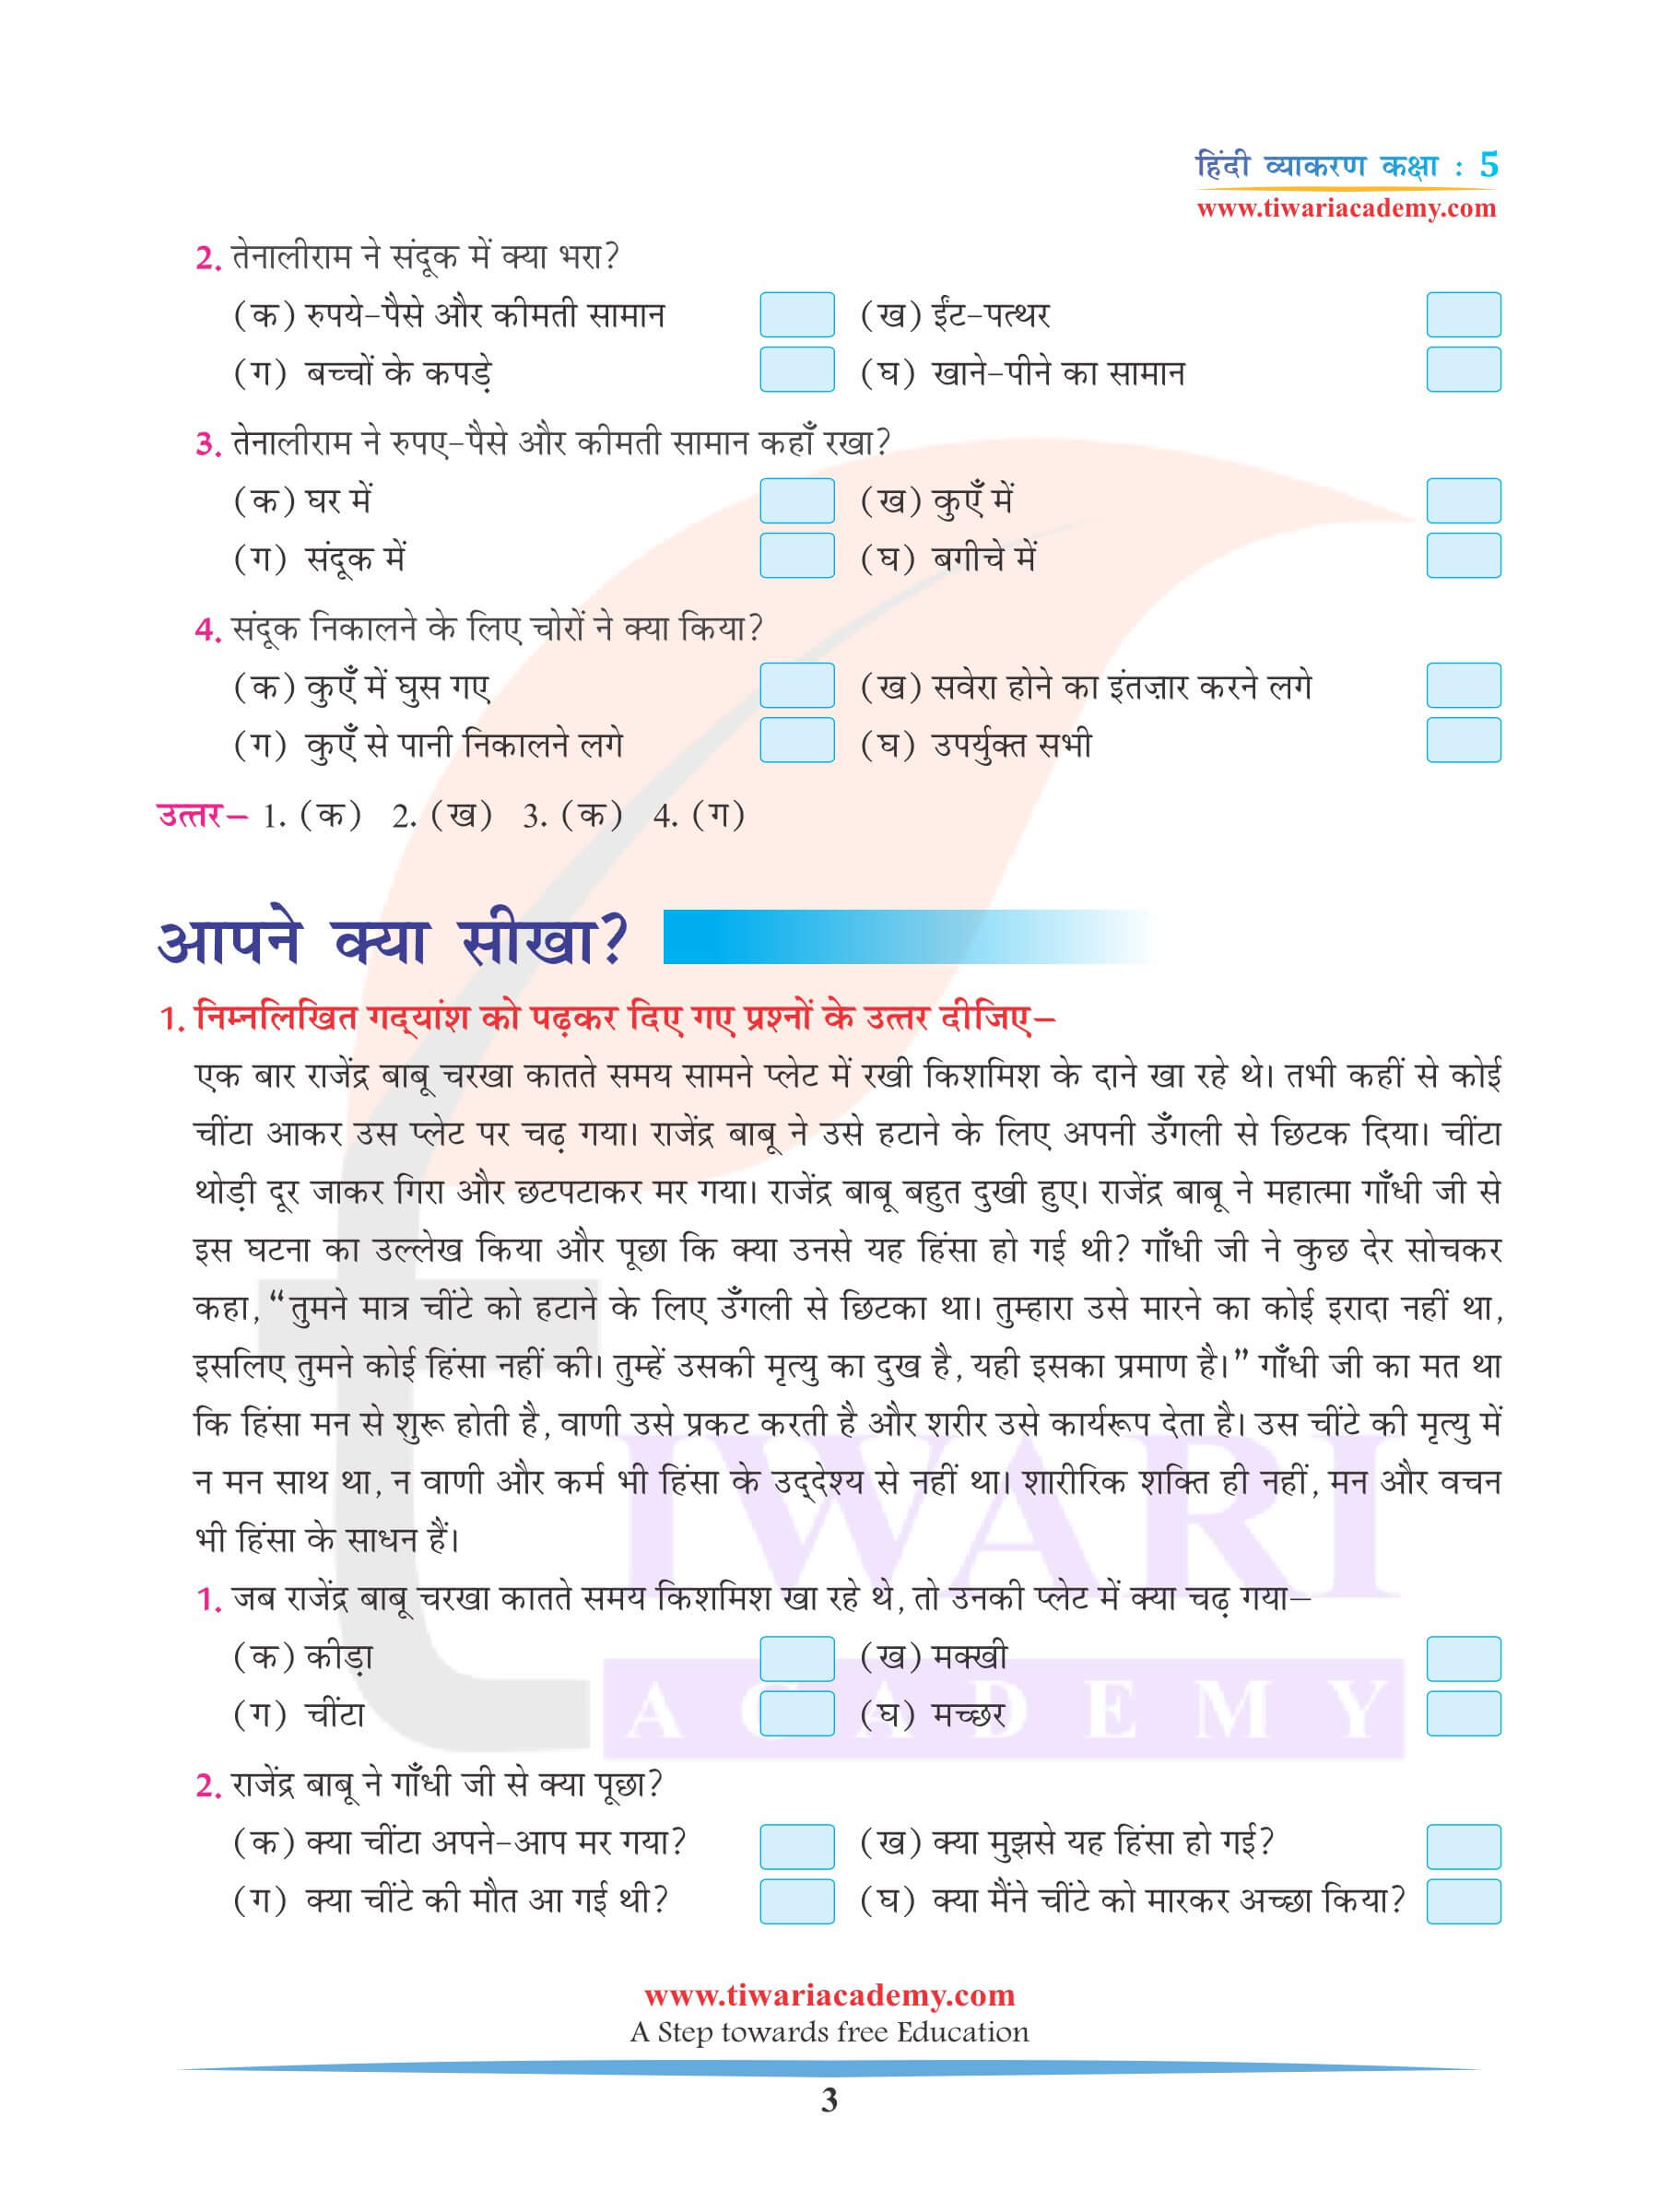 कक्षा 5 हिंदी व्याकरण अध्याय 19 अपठित गद्यांश के उदाहरण